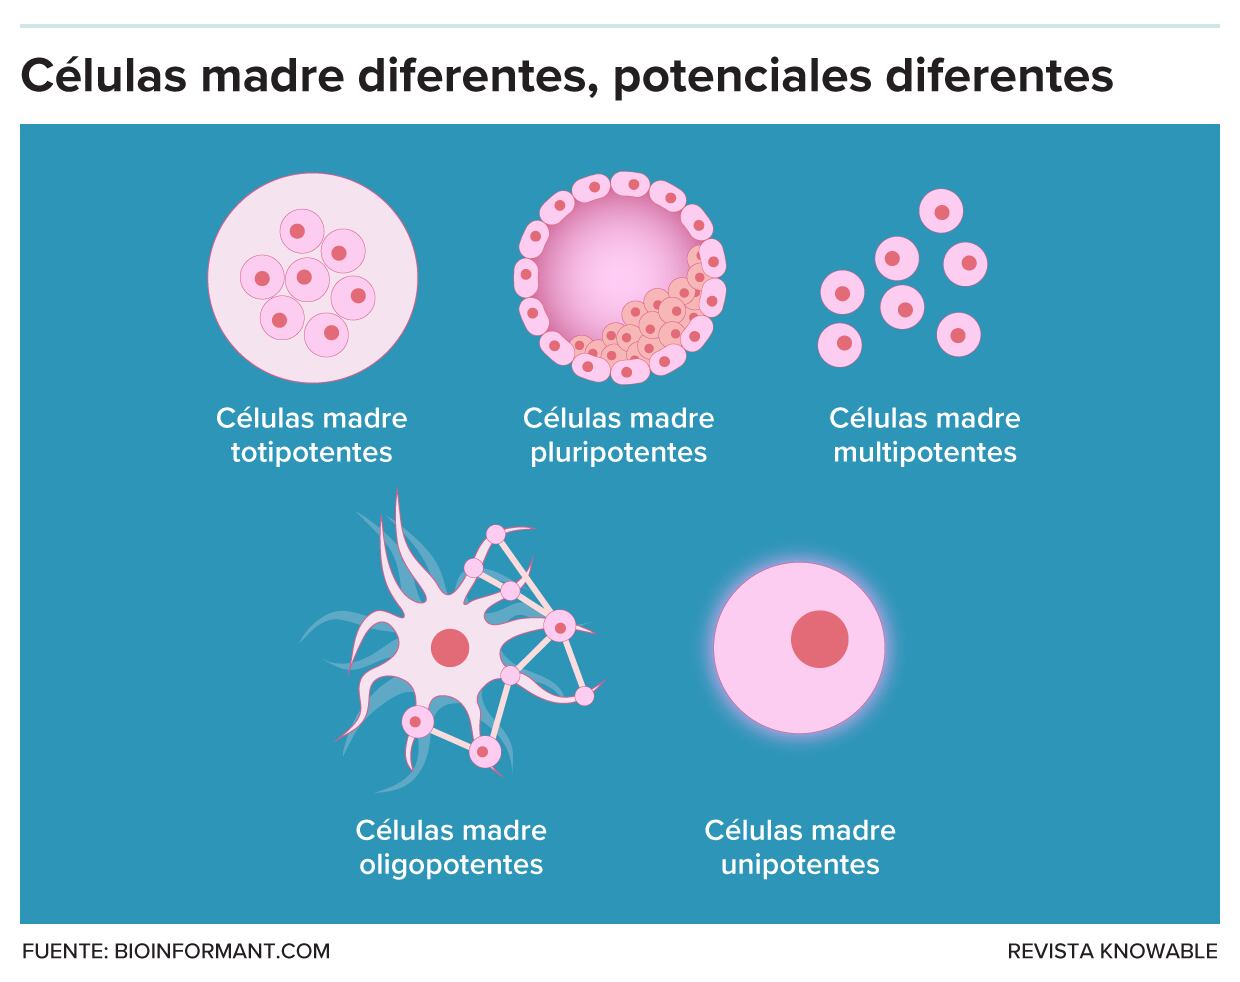 Las células madre se diferencian por sus capacidades.